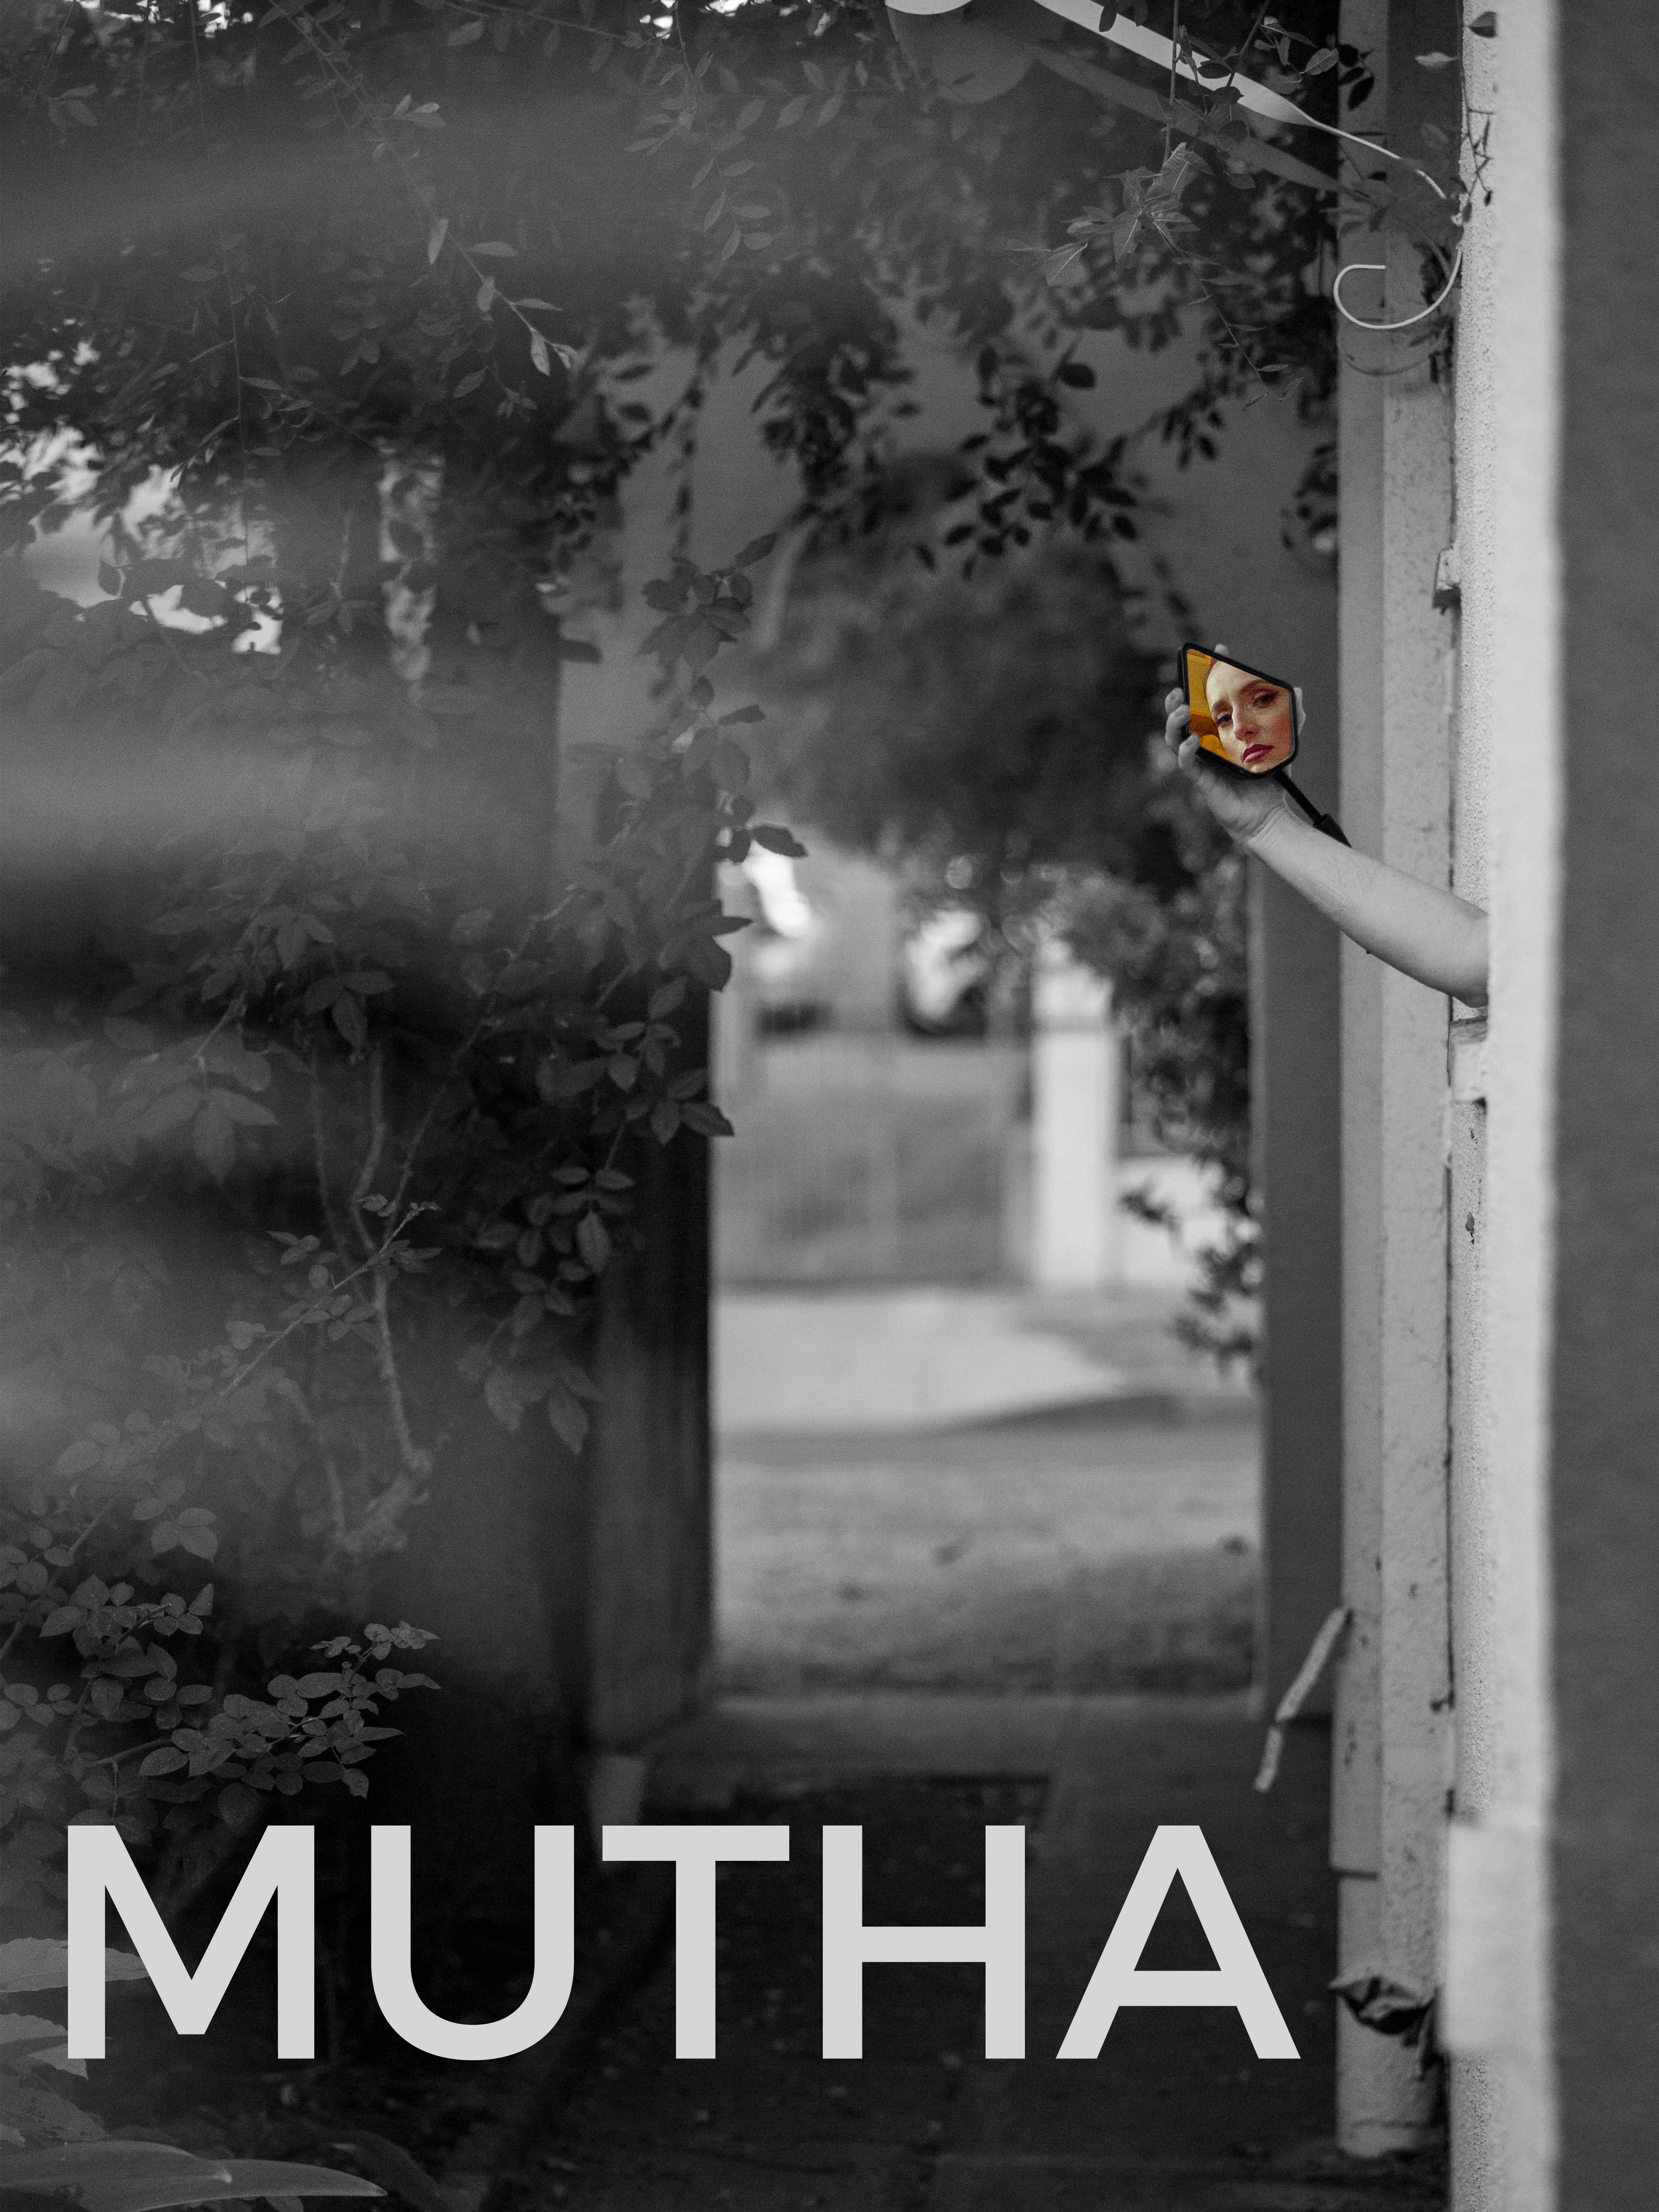 MUTHA